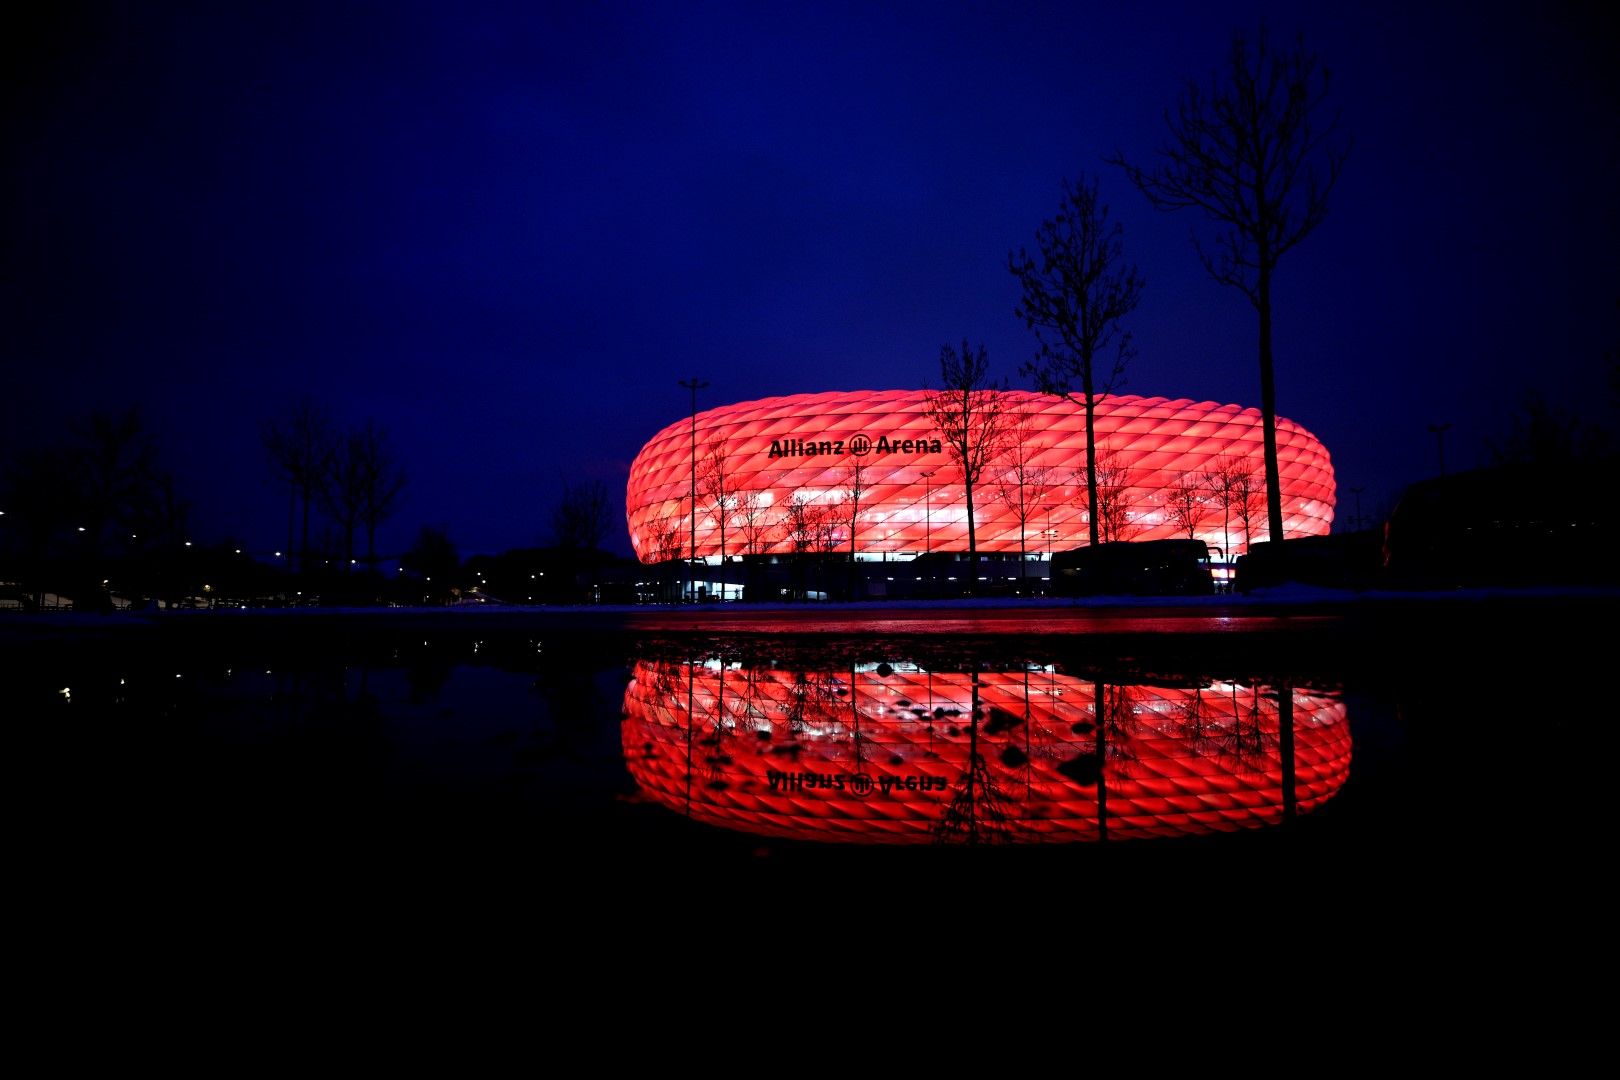 "Fußball Arena München", както ще се казва "Алианц Арена" от догодина, е стадионът на Байерн - онзи, който добре познавате. Футуристичен, изграден от светещите му панели, приел вече и финал на Шампионската лига през 2012 г., въпреки че бе построен сравнително наскоро (2005-а).